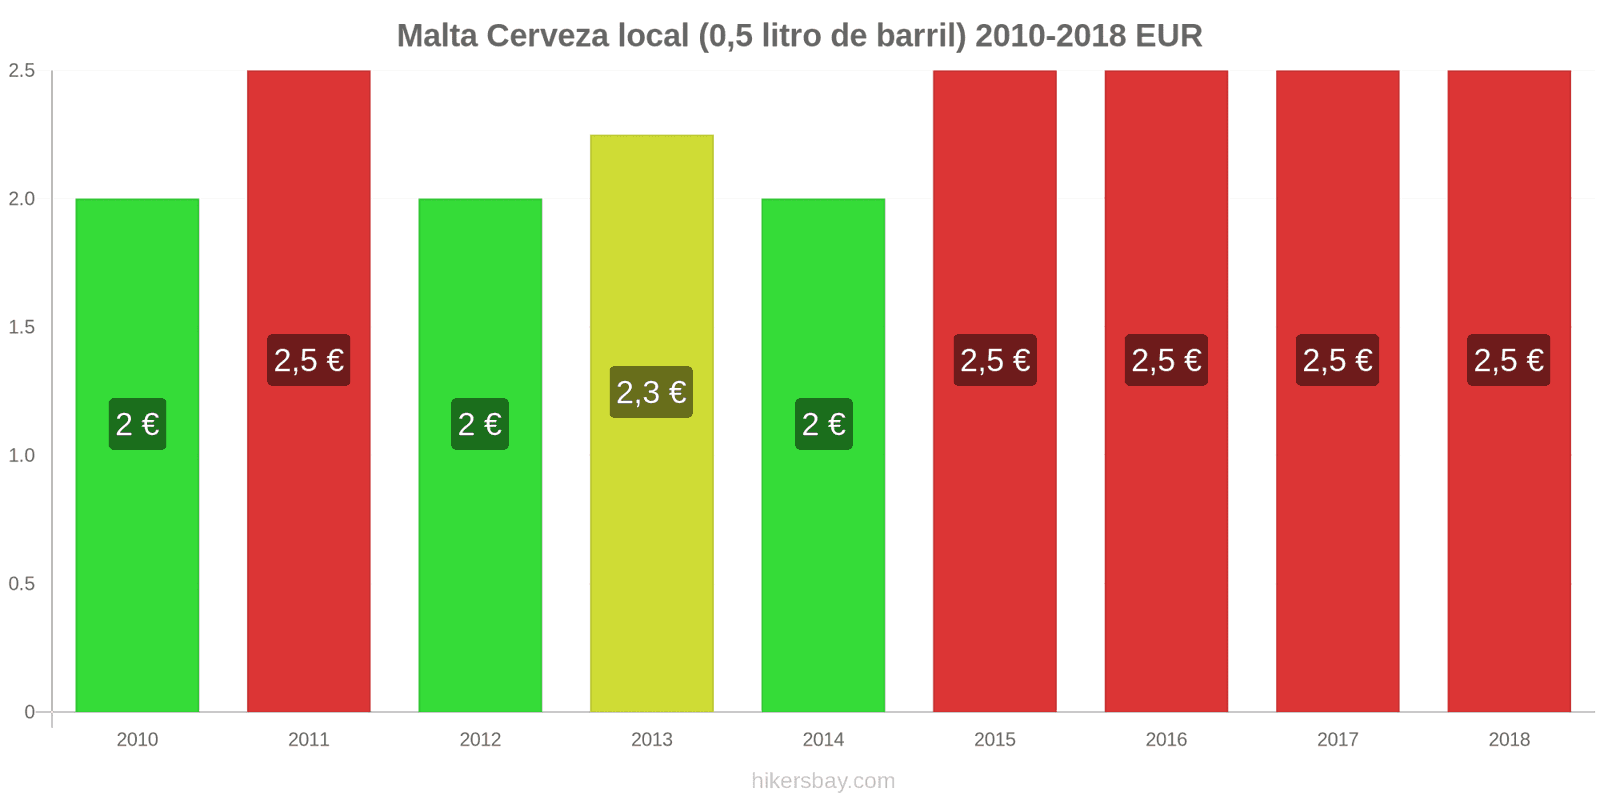 Malta cambios de precios Cerveza de barril (0,5 litros) hikersbay.com